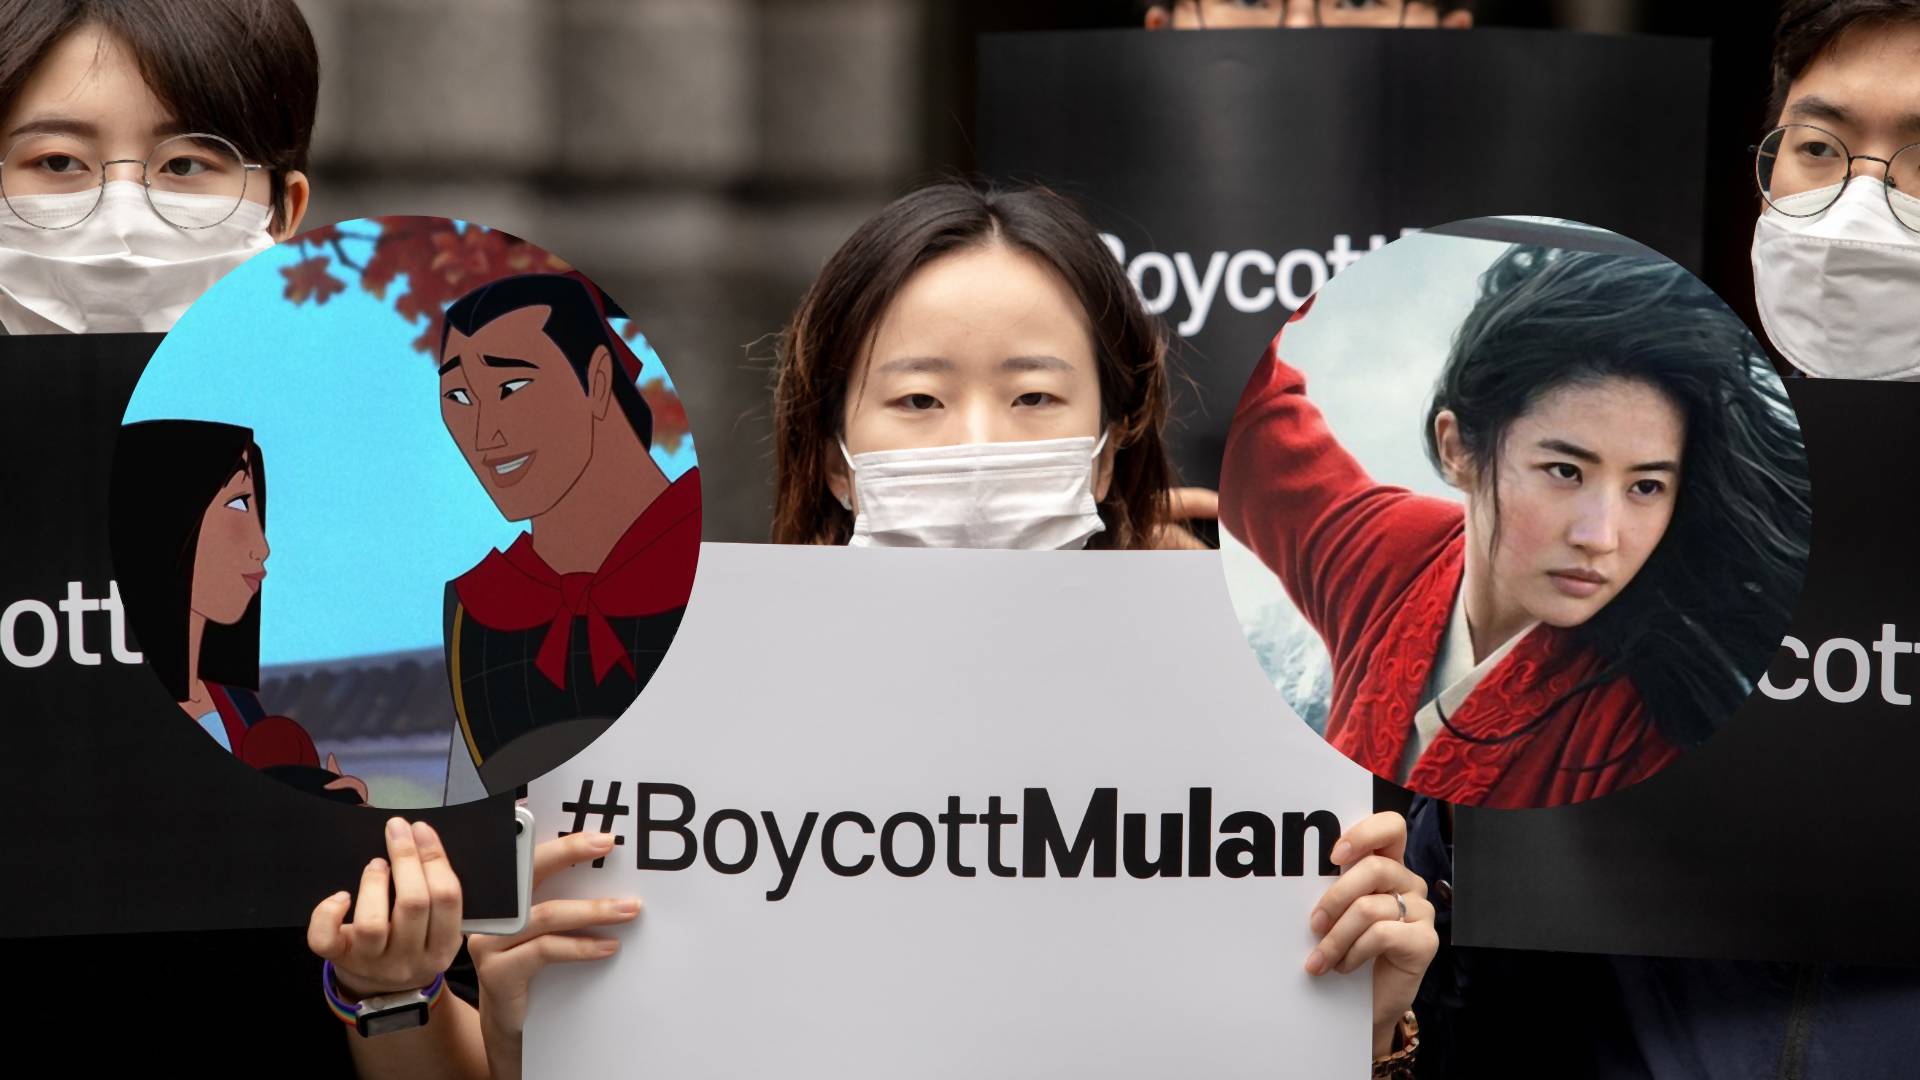 Dlaczego coraz więcej osób bojkotuje film "Mulan"?